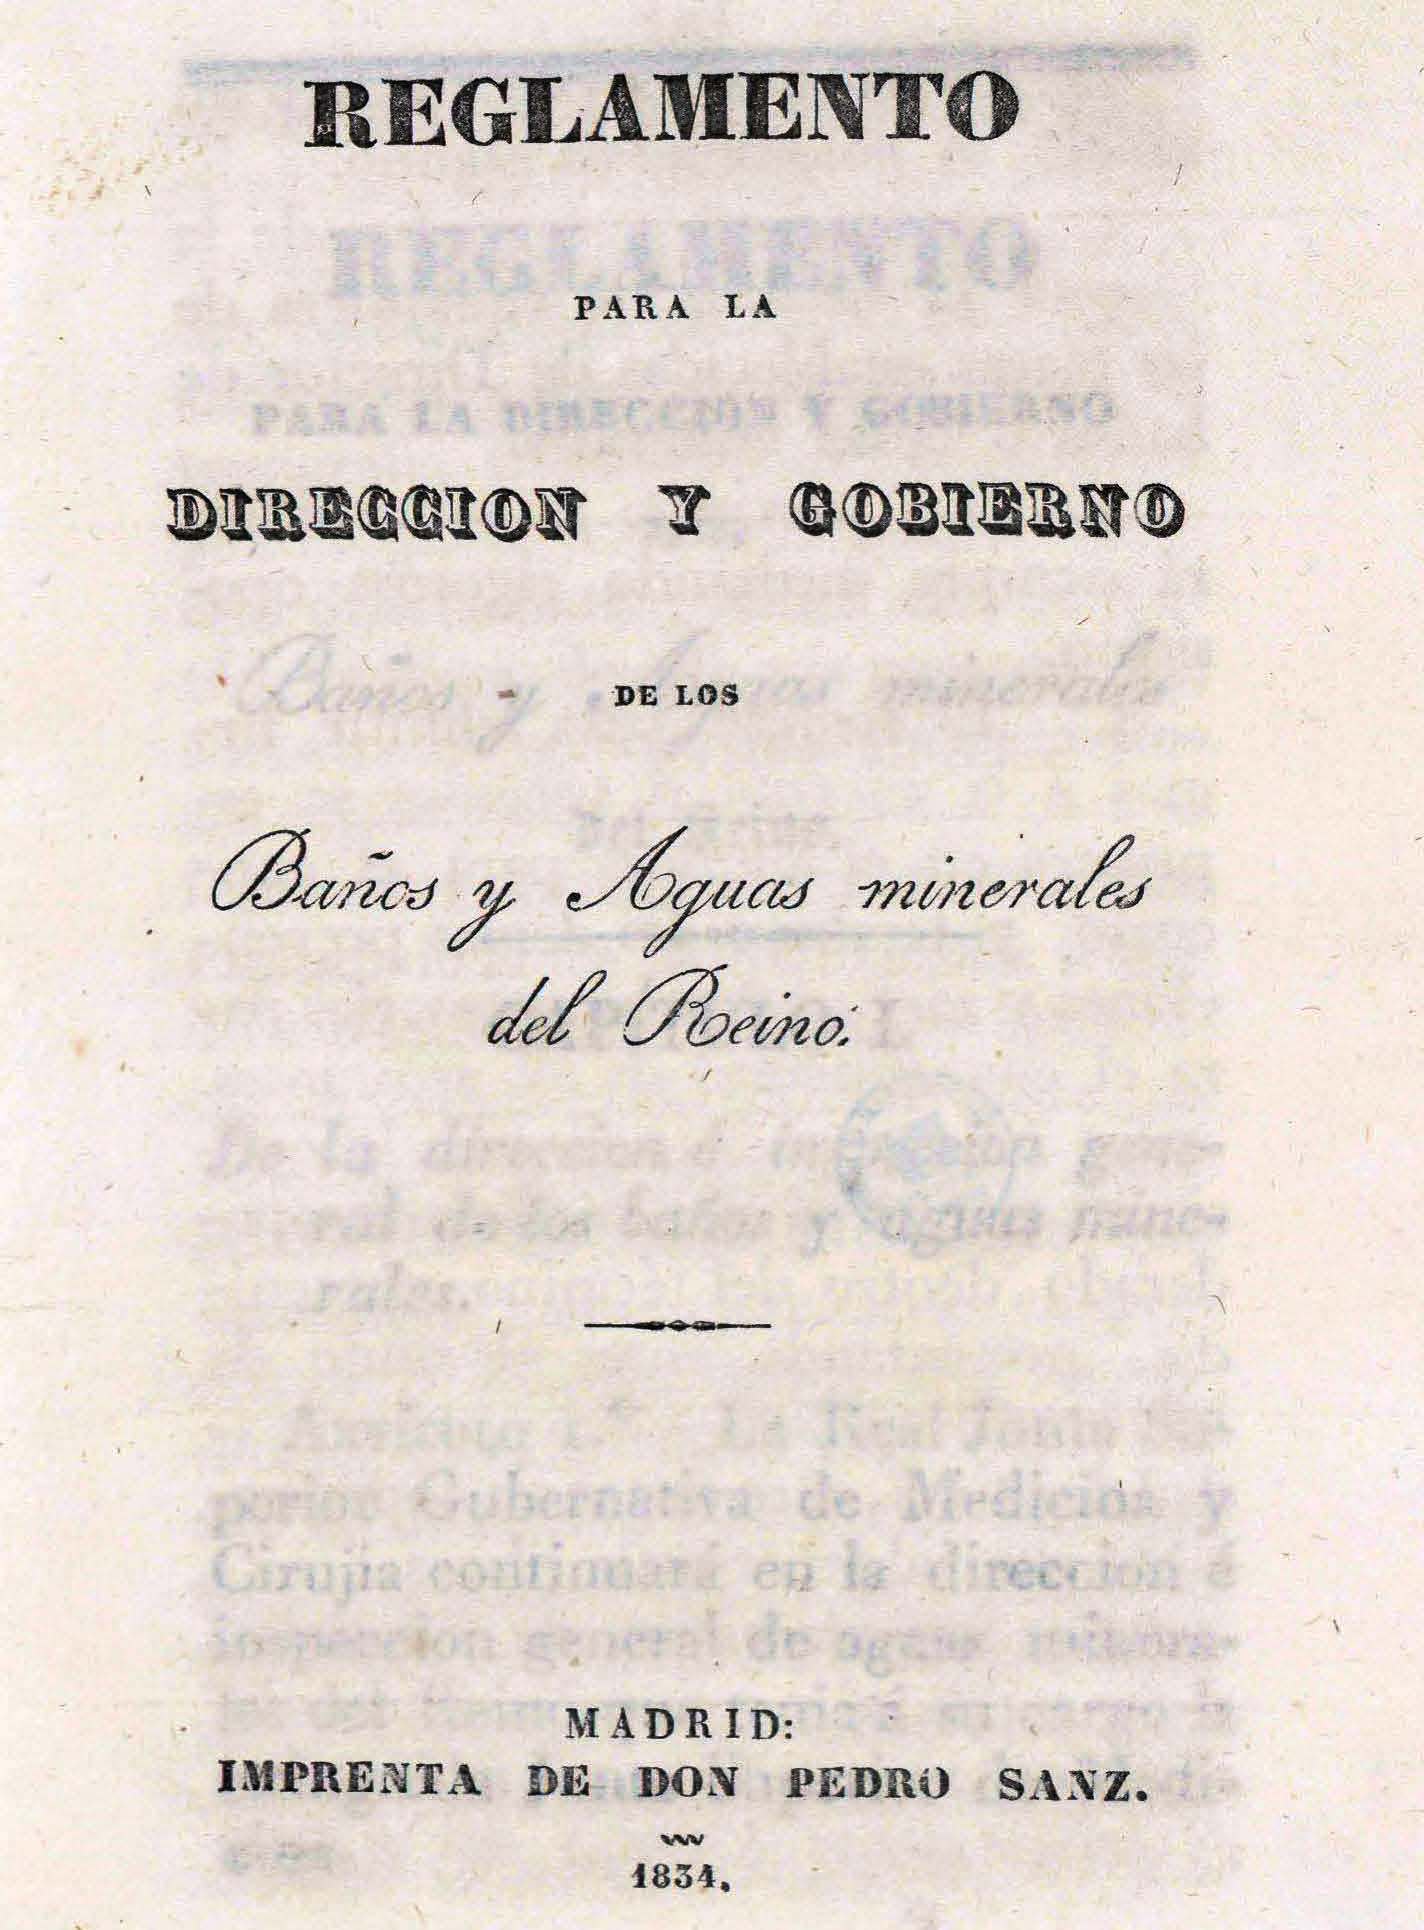 Portada del libro "Reglamento para la direccion y gobierno de los baños y aguas minerales del Reino" (1834)